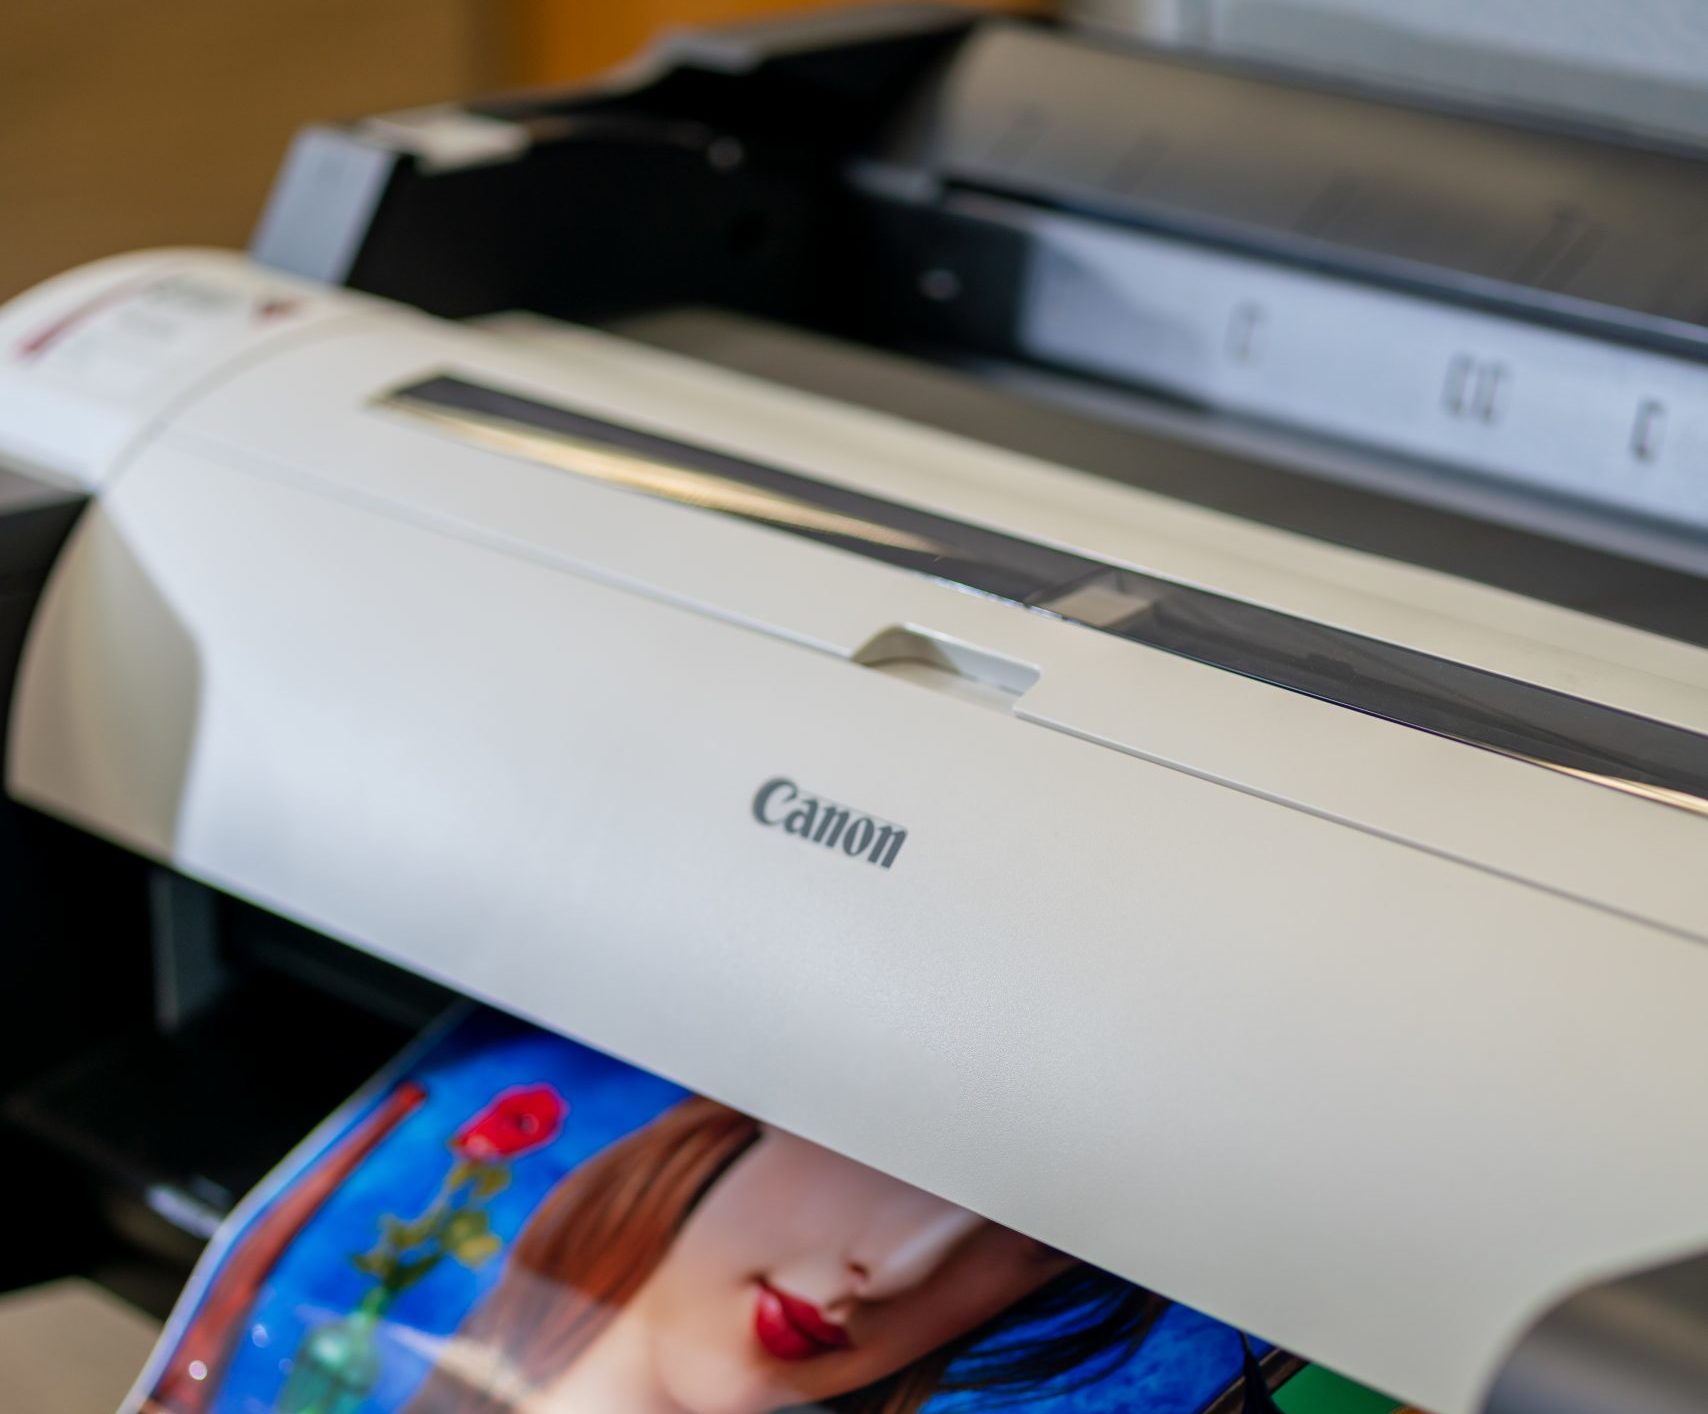 Inkjet vs. Laser Printers